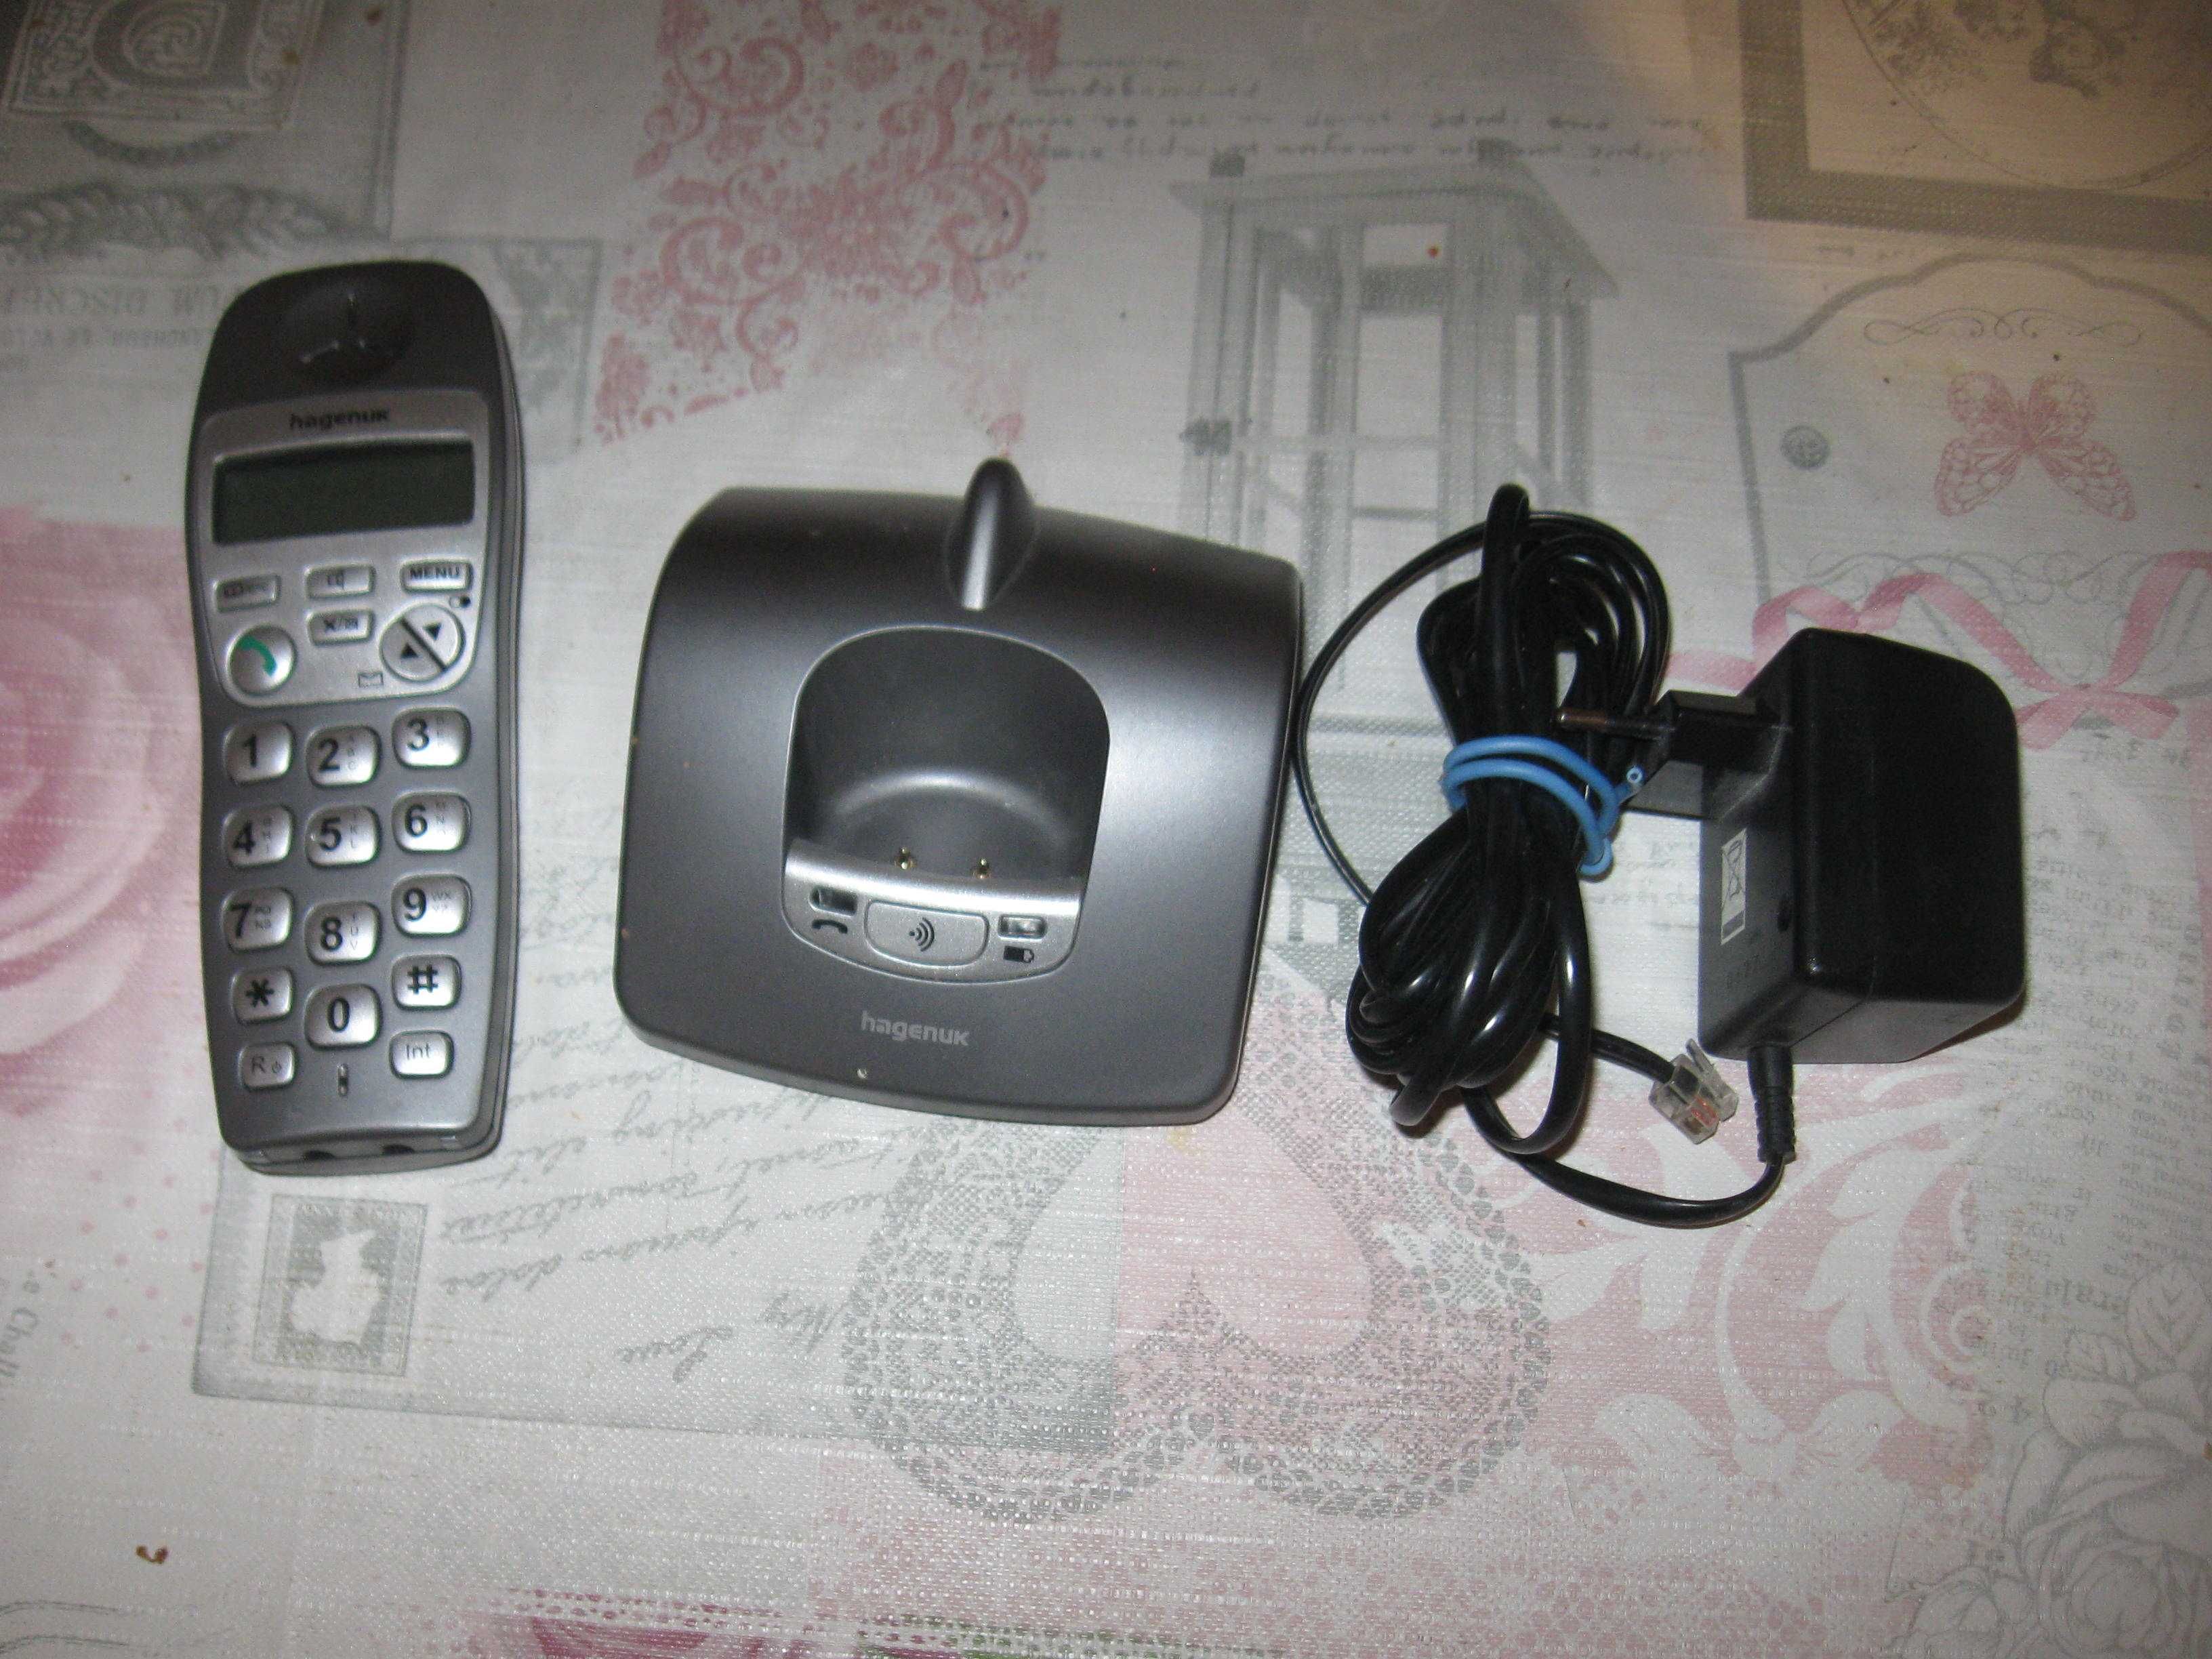 Telefon bezprzewodowy Hagenuk